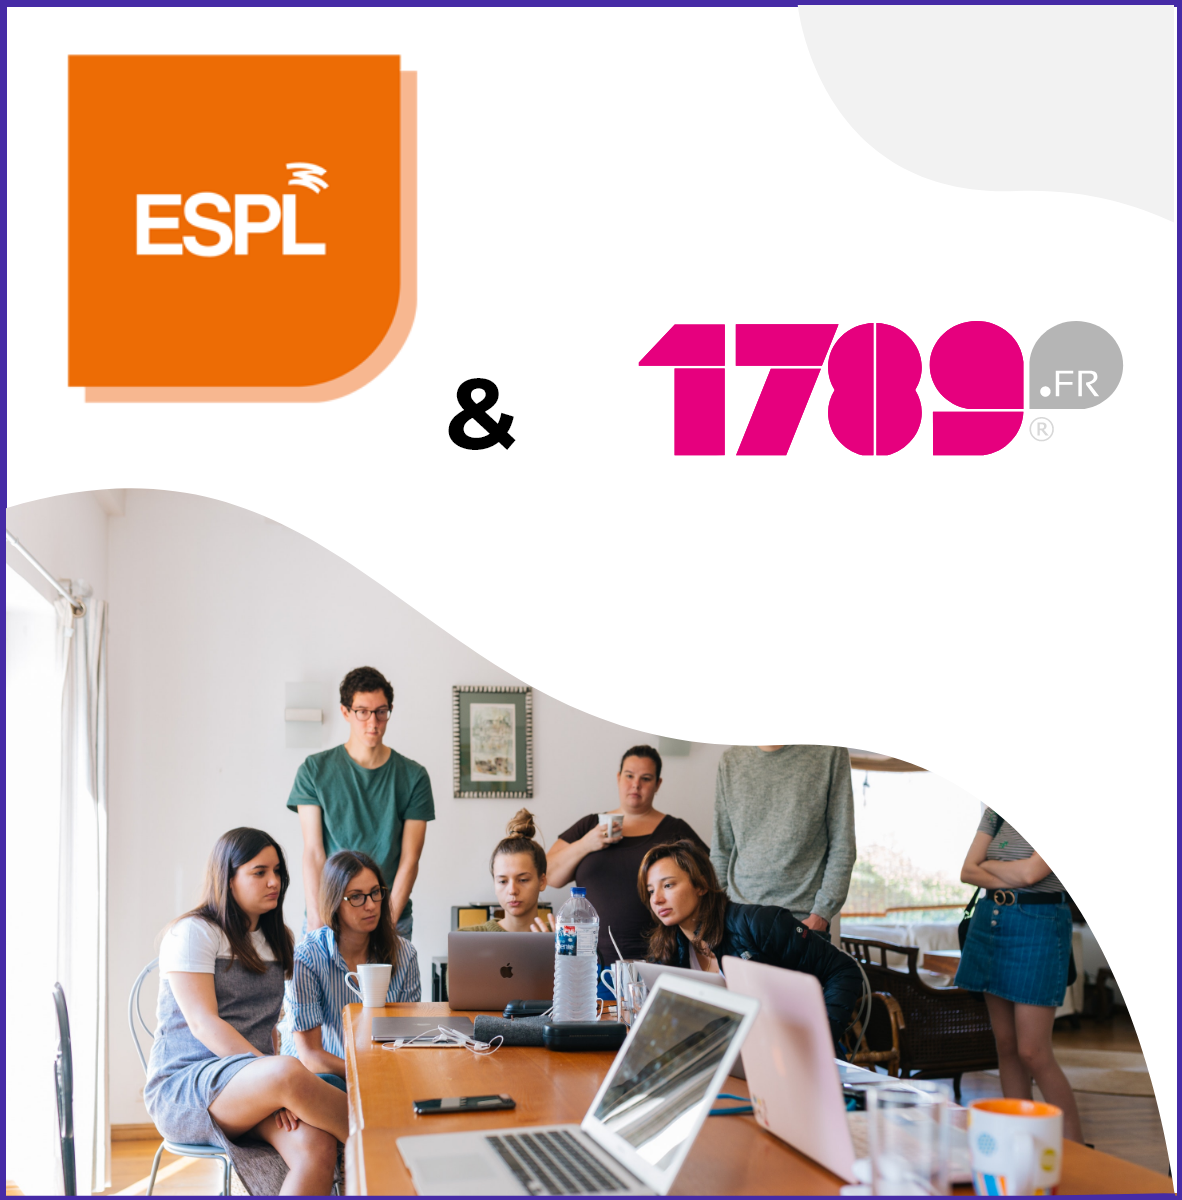 1789.fr et l'ESPL ont créé une certification marketing digital : un partenariat innovant entre deux acteurs angevins de la formation